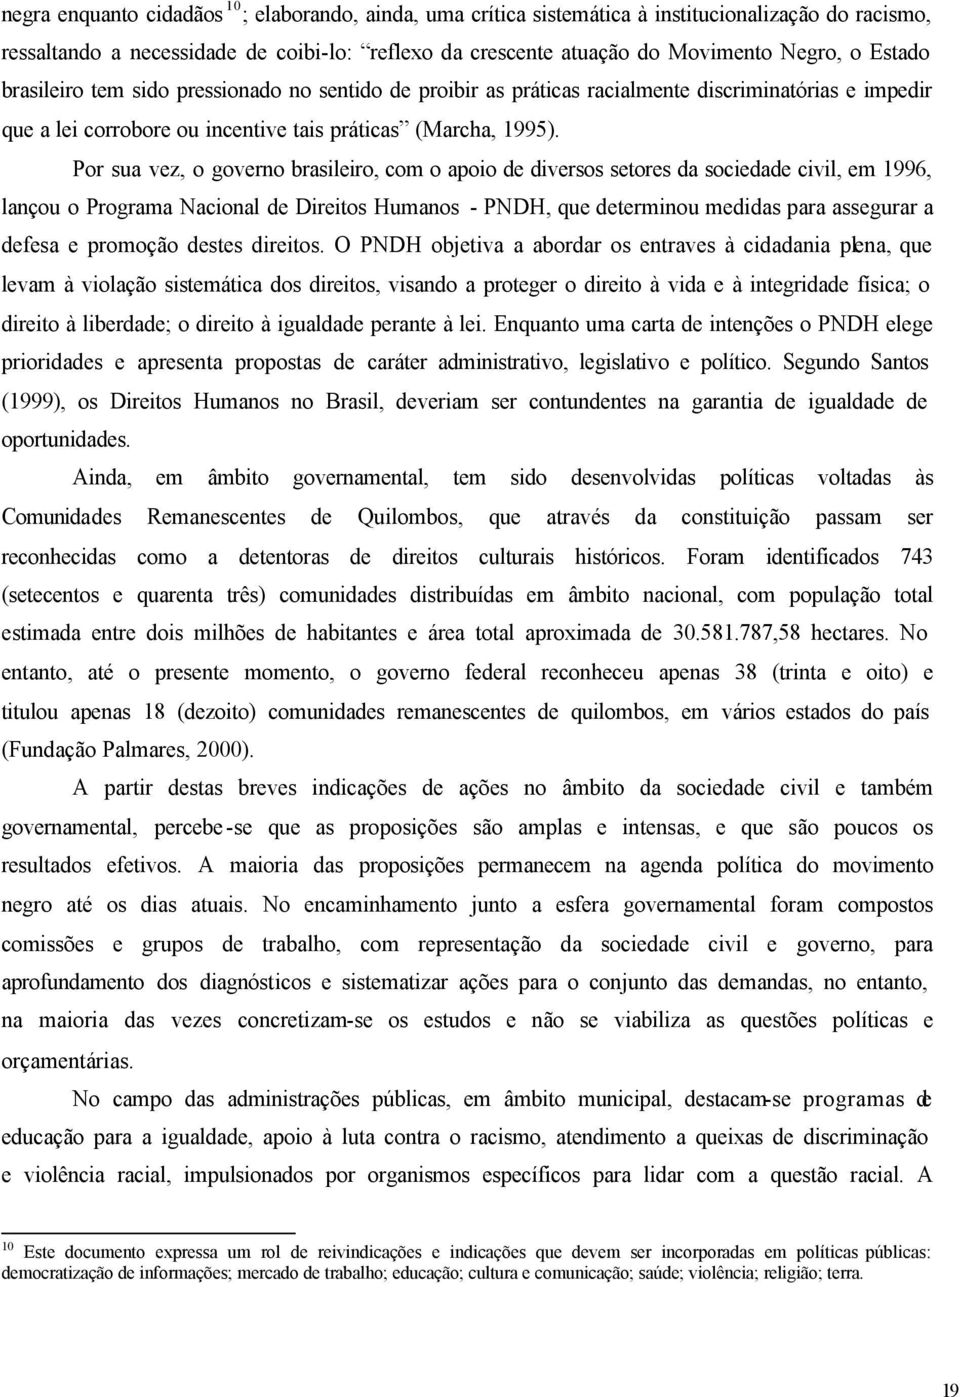 Por sua vez, o governo brasileiro, com o apoio de diversos setores da sociedade civil, em 1996, lançou o Programa Nacional de Direitos Humanos - PNDH, que determinou medidas para assegurar a defesa e